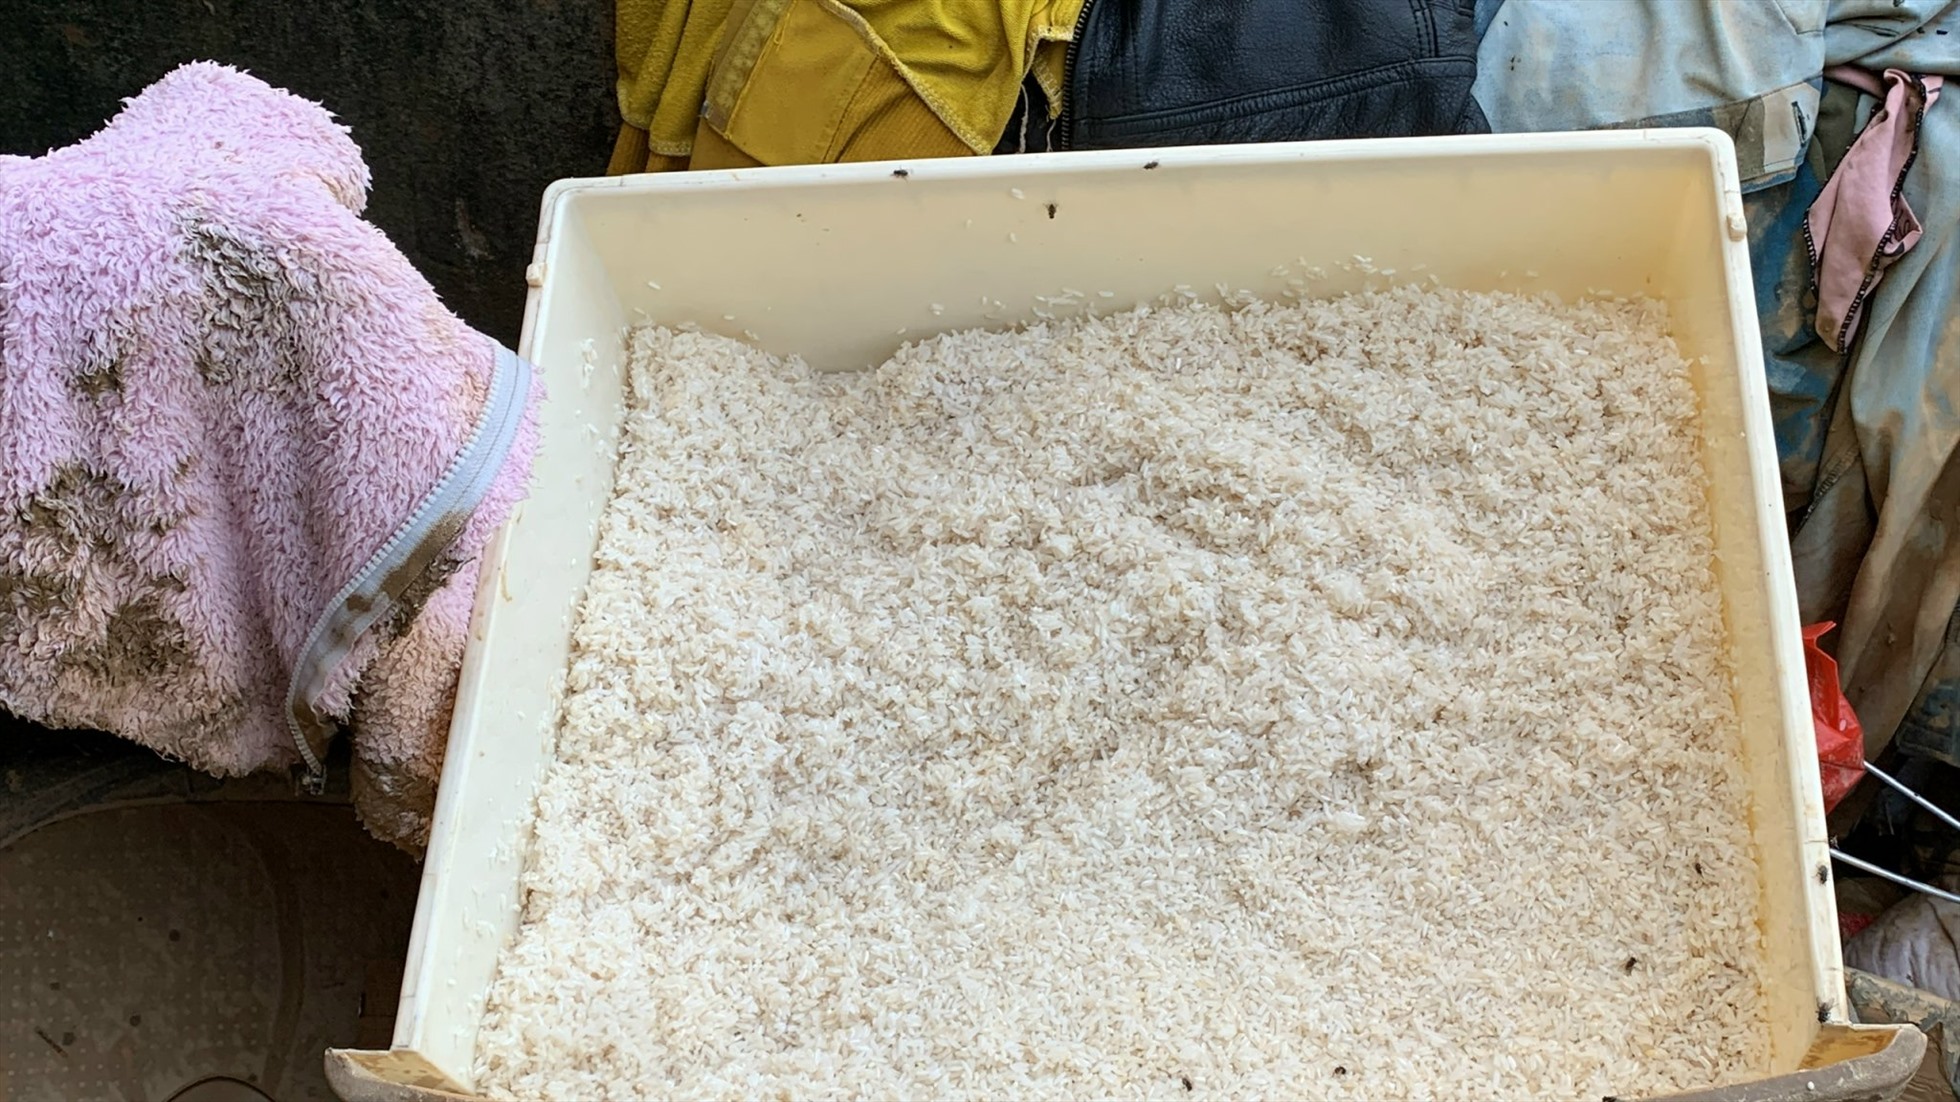 Bởi những hạt gạo ít ỏi đã bị nước lũ làm ẩm mốc phải chờ nắng lên để hong khô